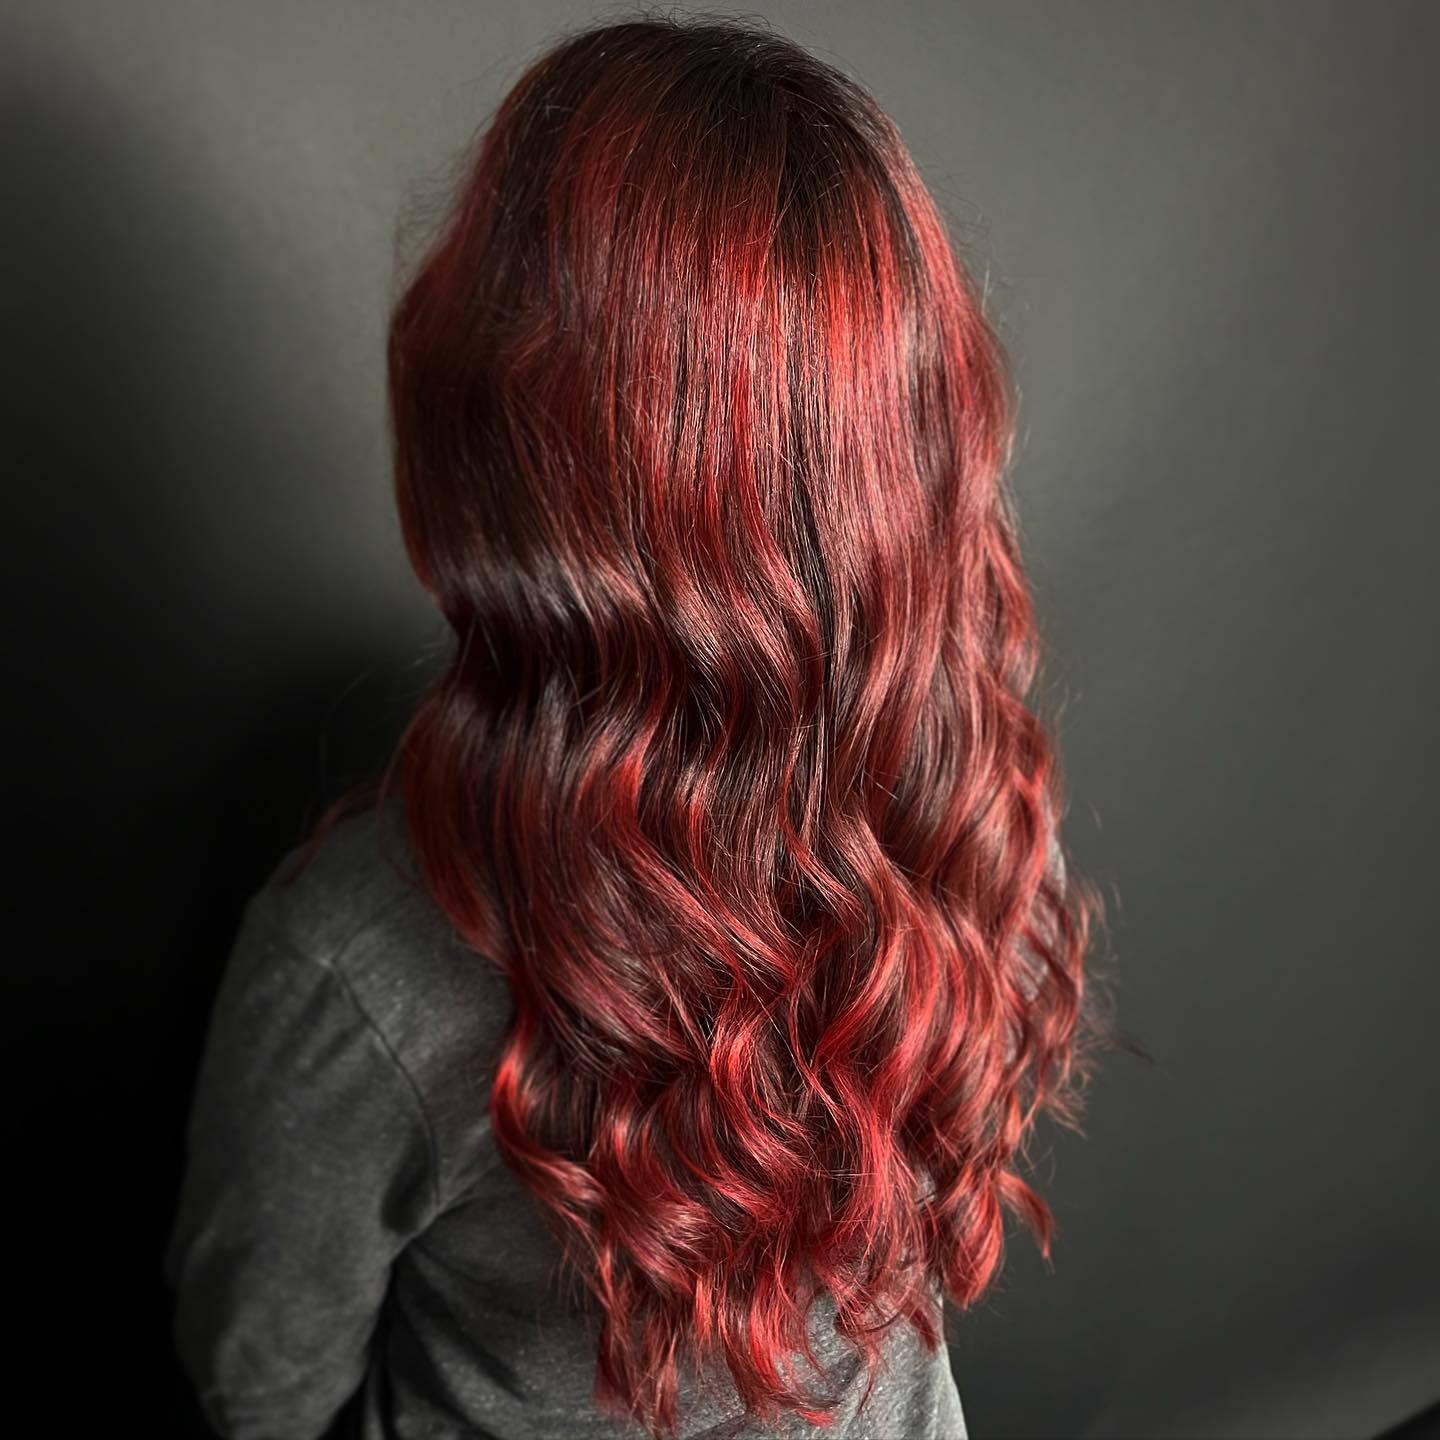 Burgundy hair color 347 burgundy hair color | burgundy hair color for women | burgundy hair color highlights Burgundy Hair Color